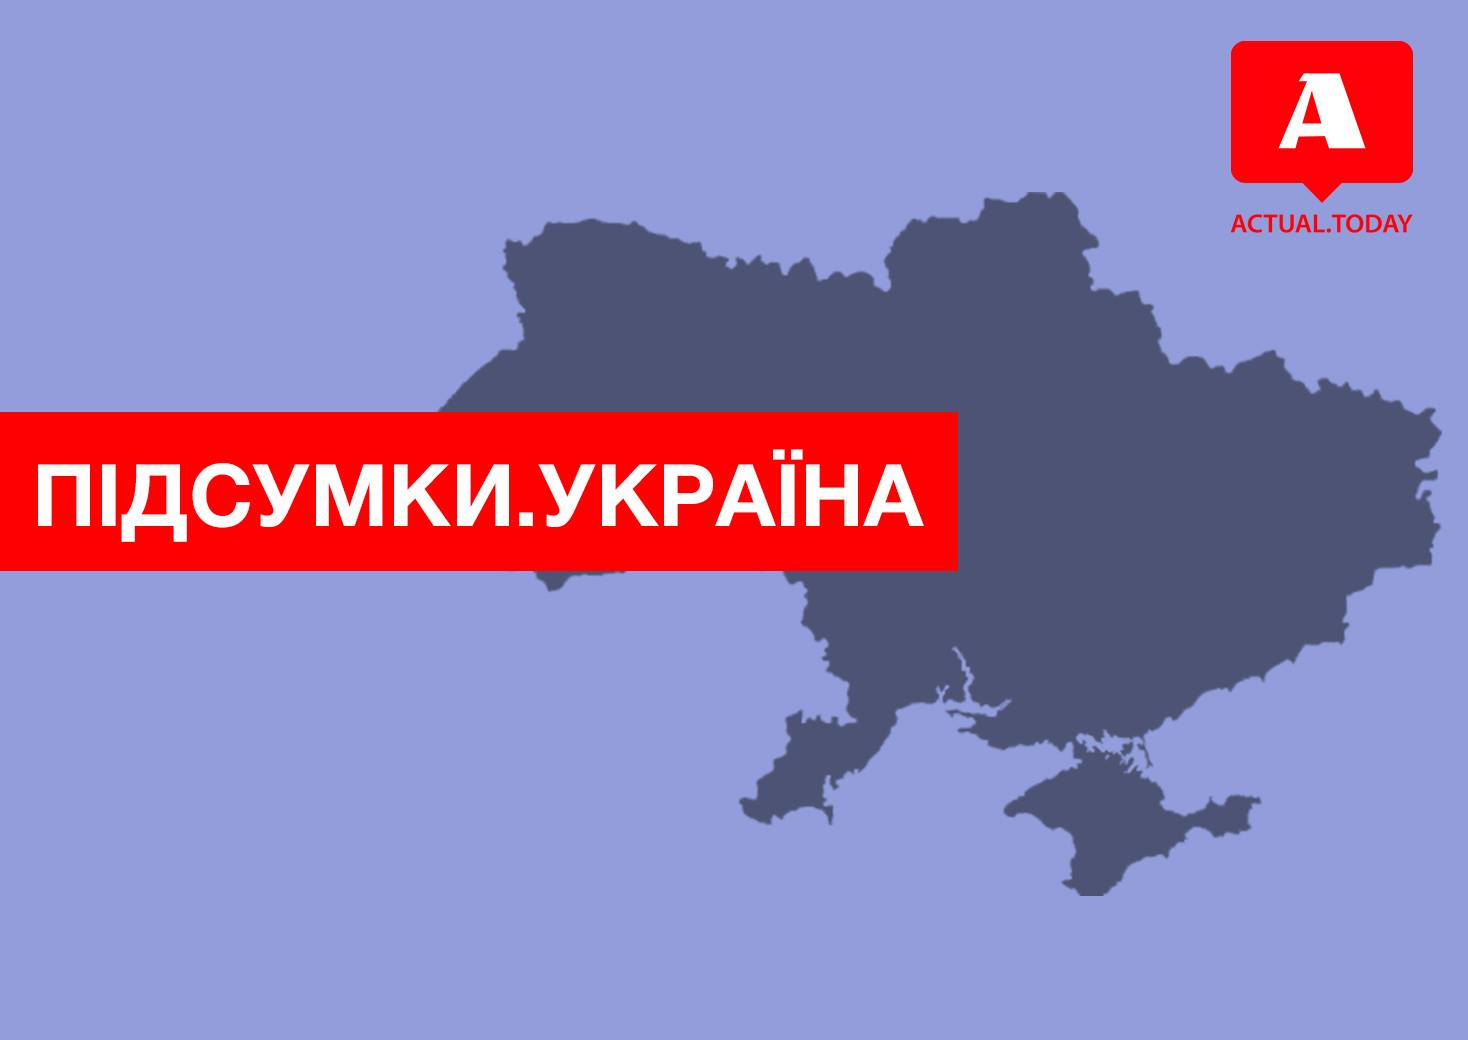 Поиск губернатора по Фейсбуку, новые правила для ввоза посылок, ЦИК дал добро Саакашвили – главные новости выходных